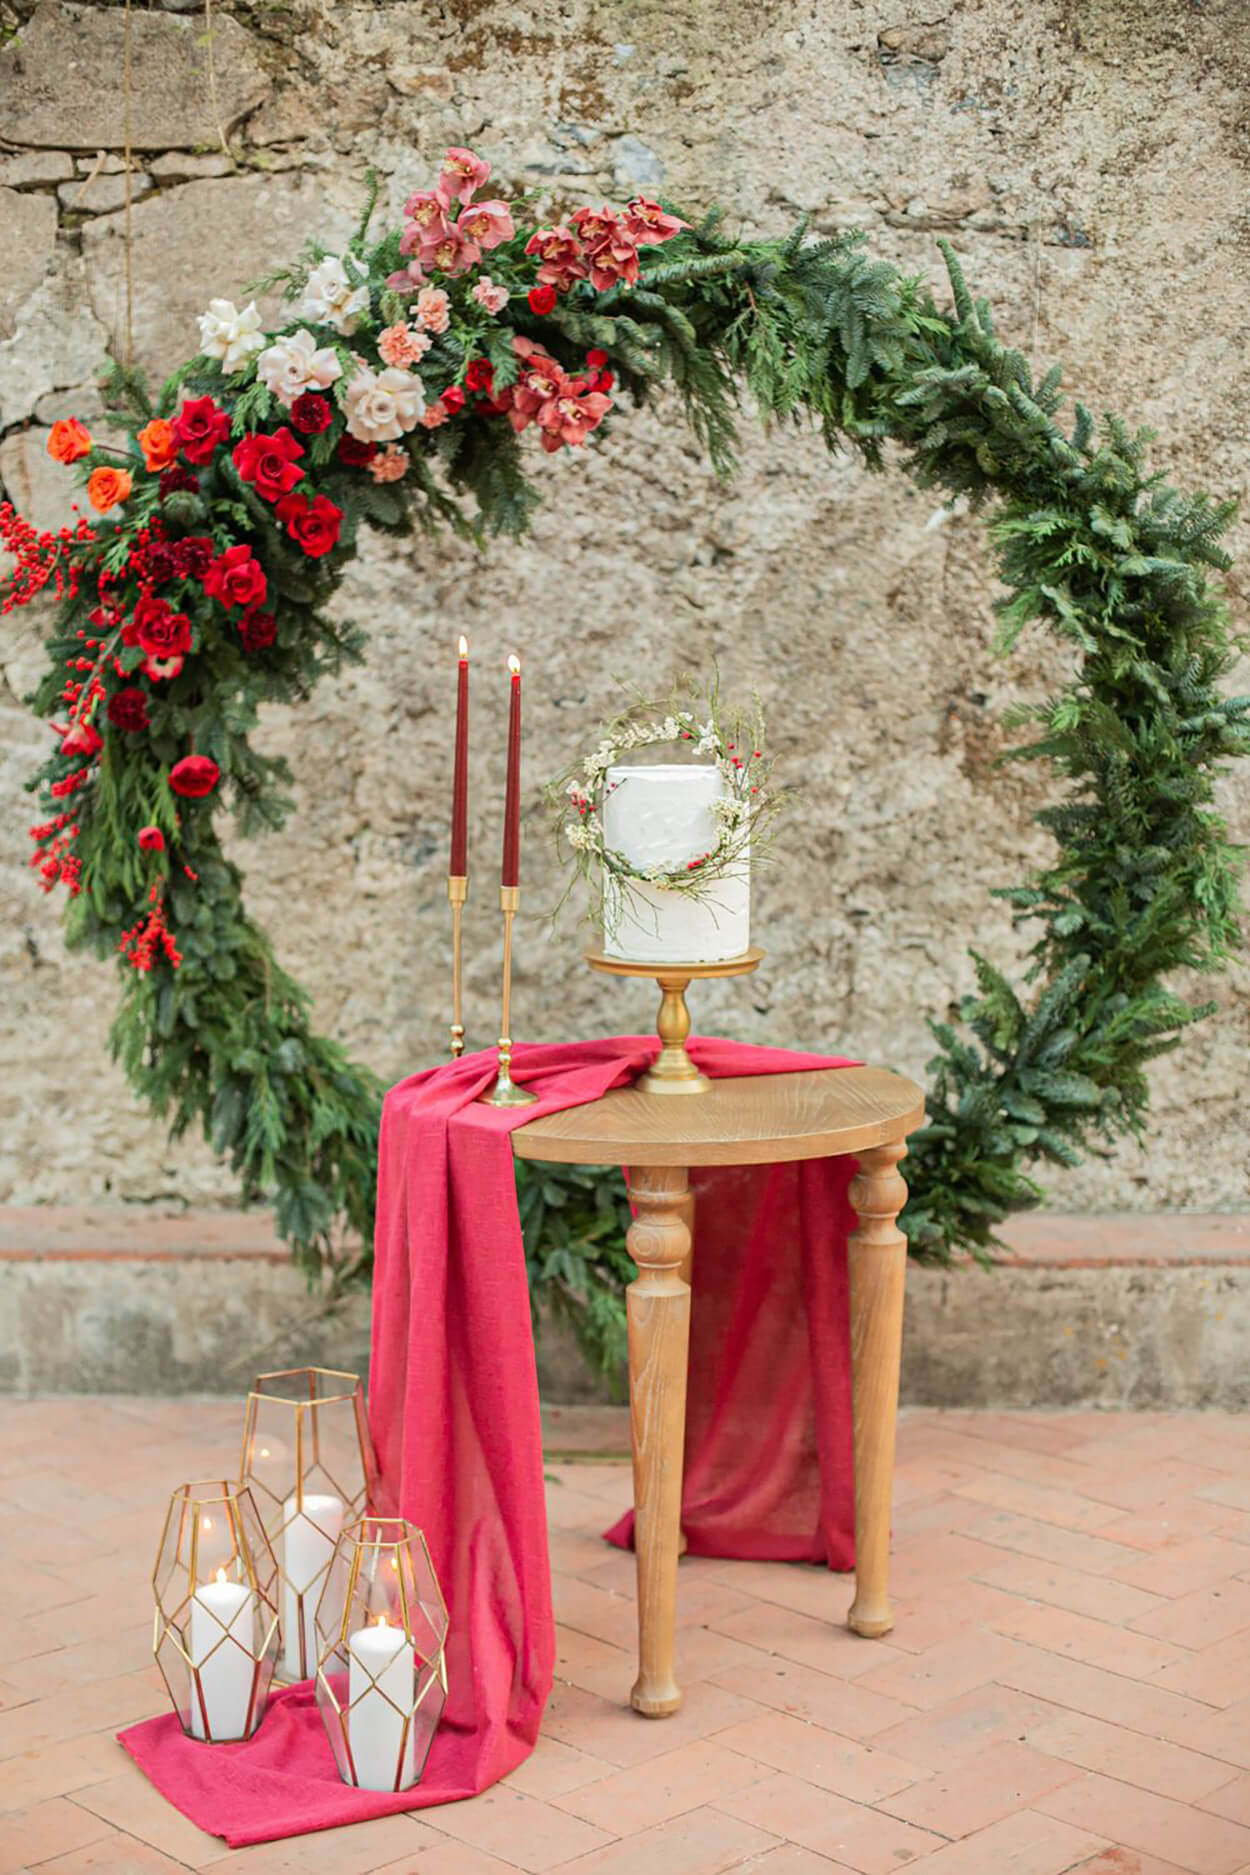 Arco com folhagens e flores vermelhas e brancas com mesa redonda marrom com bolo de casamento e velas